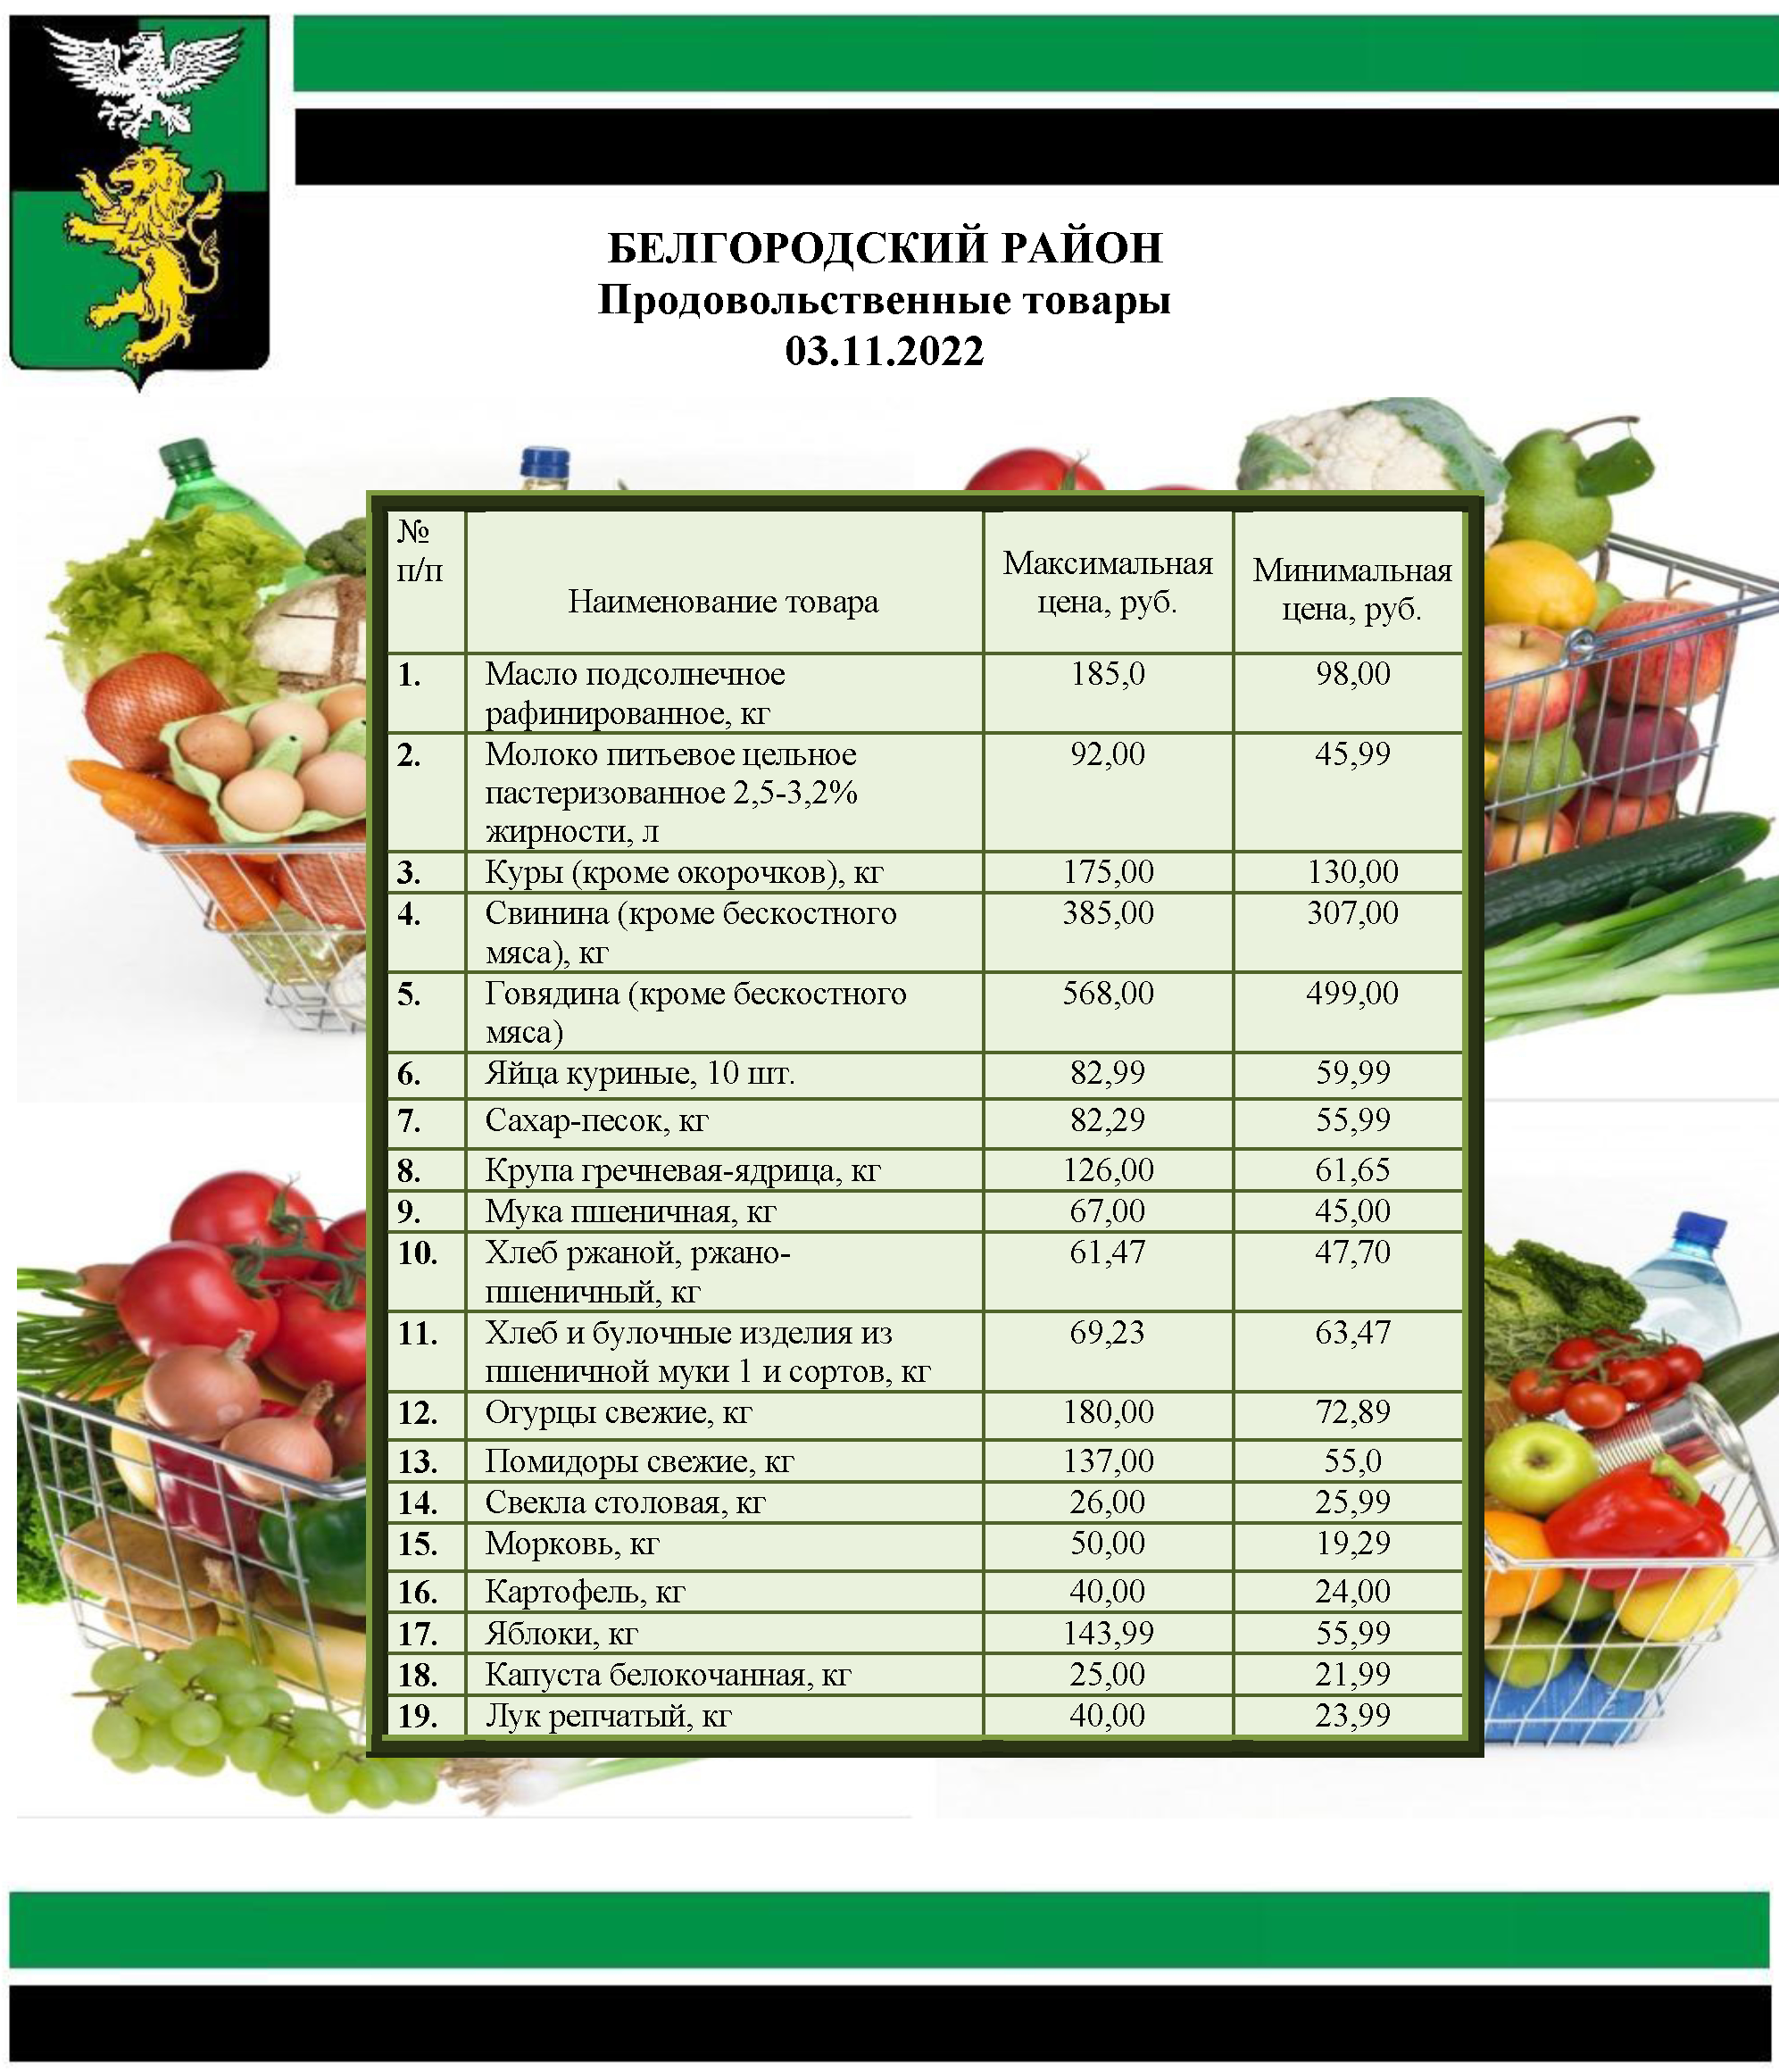 Информация о ценах на продовольственные товары, подлежащие мониторингу, на территории Белгородского района на 03.11.2022